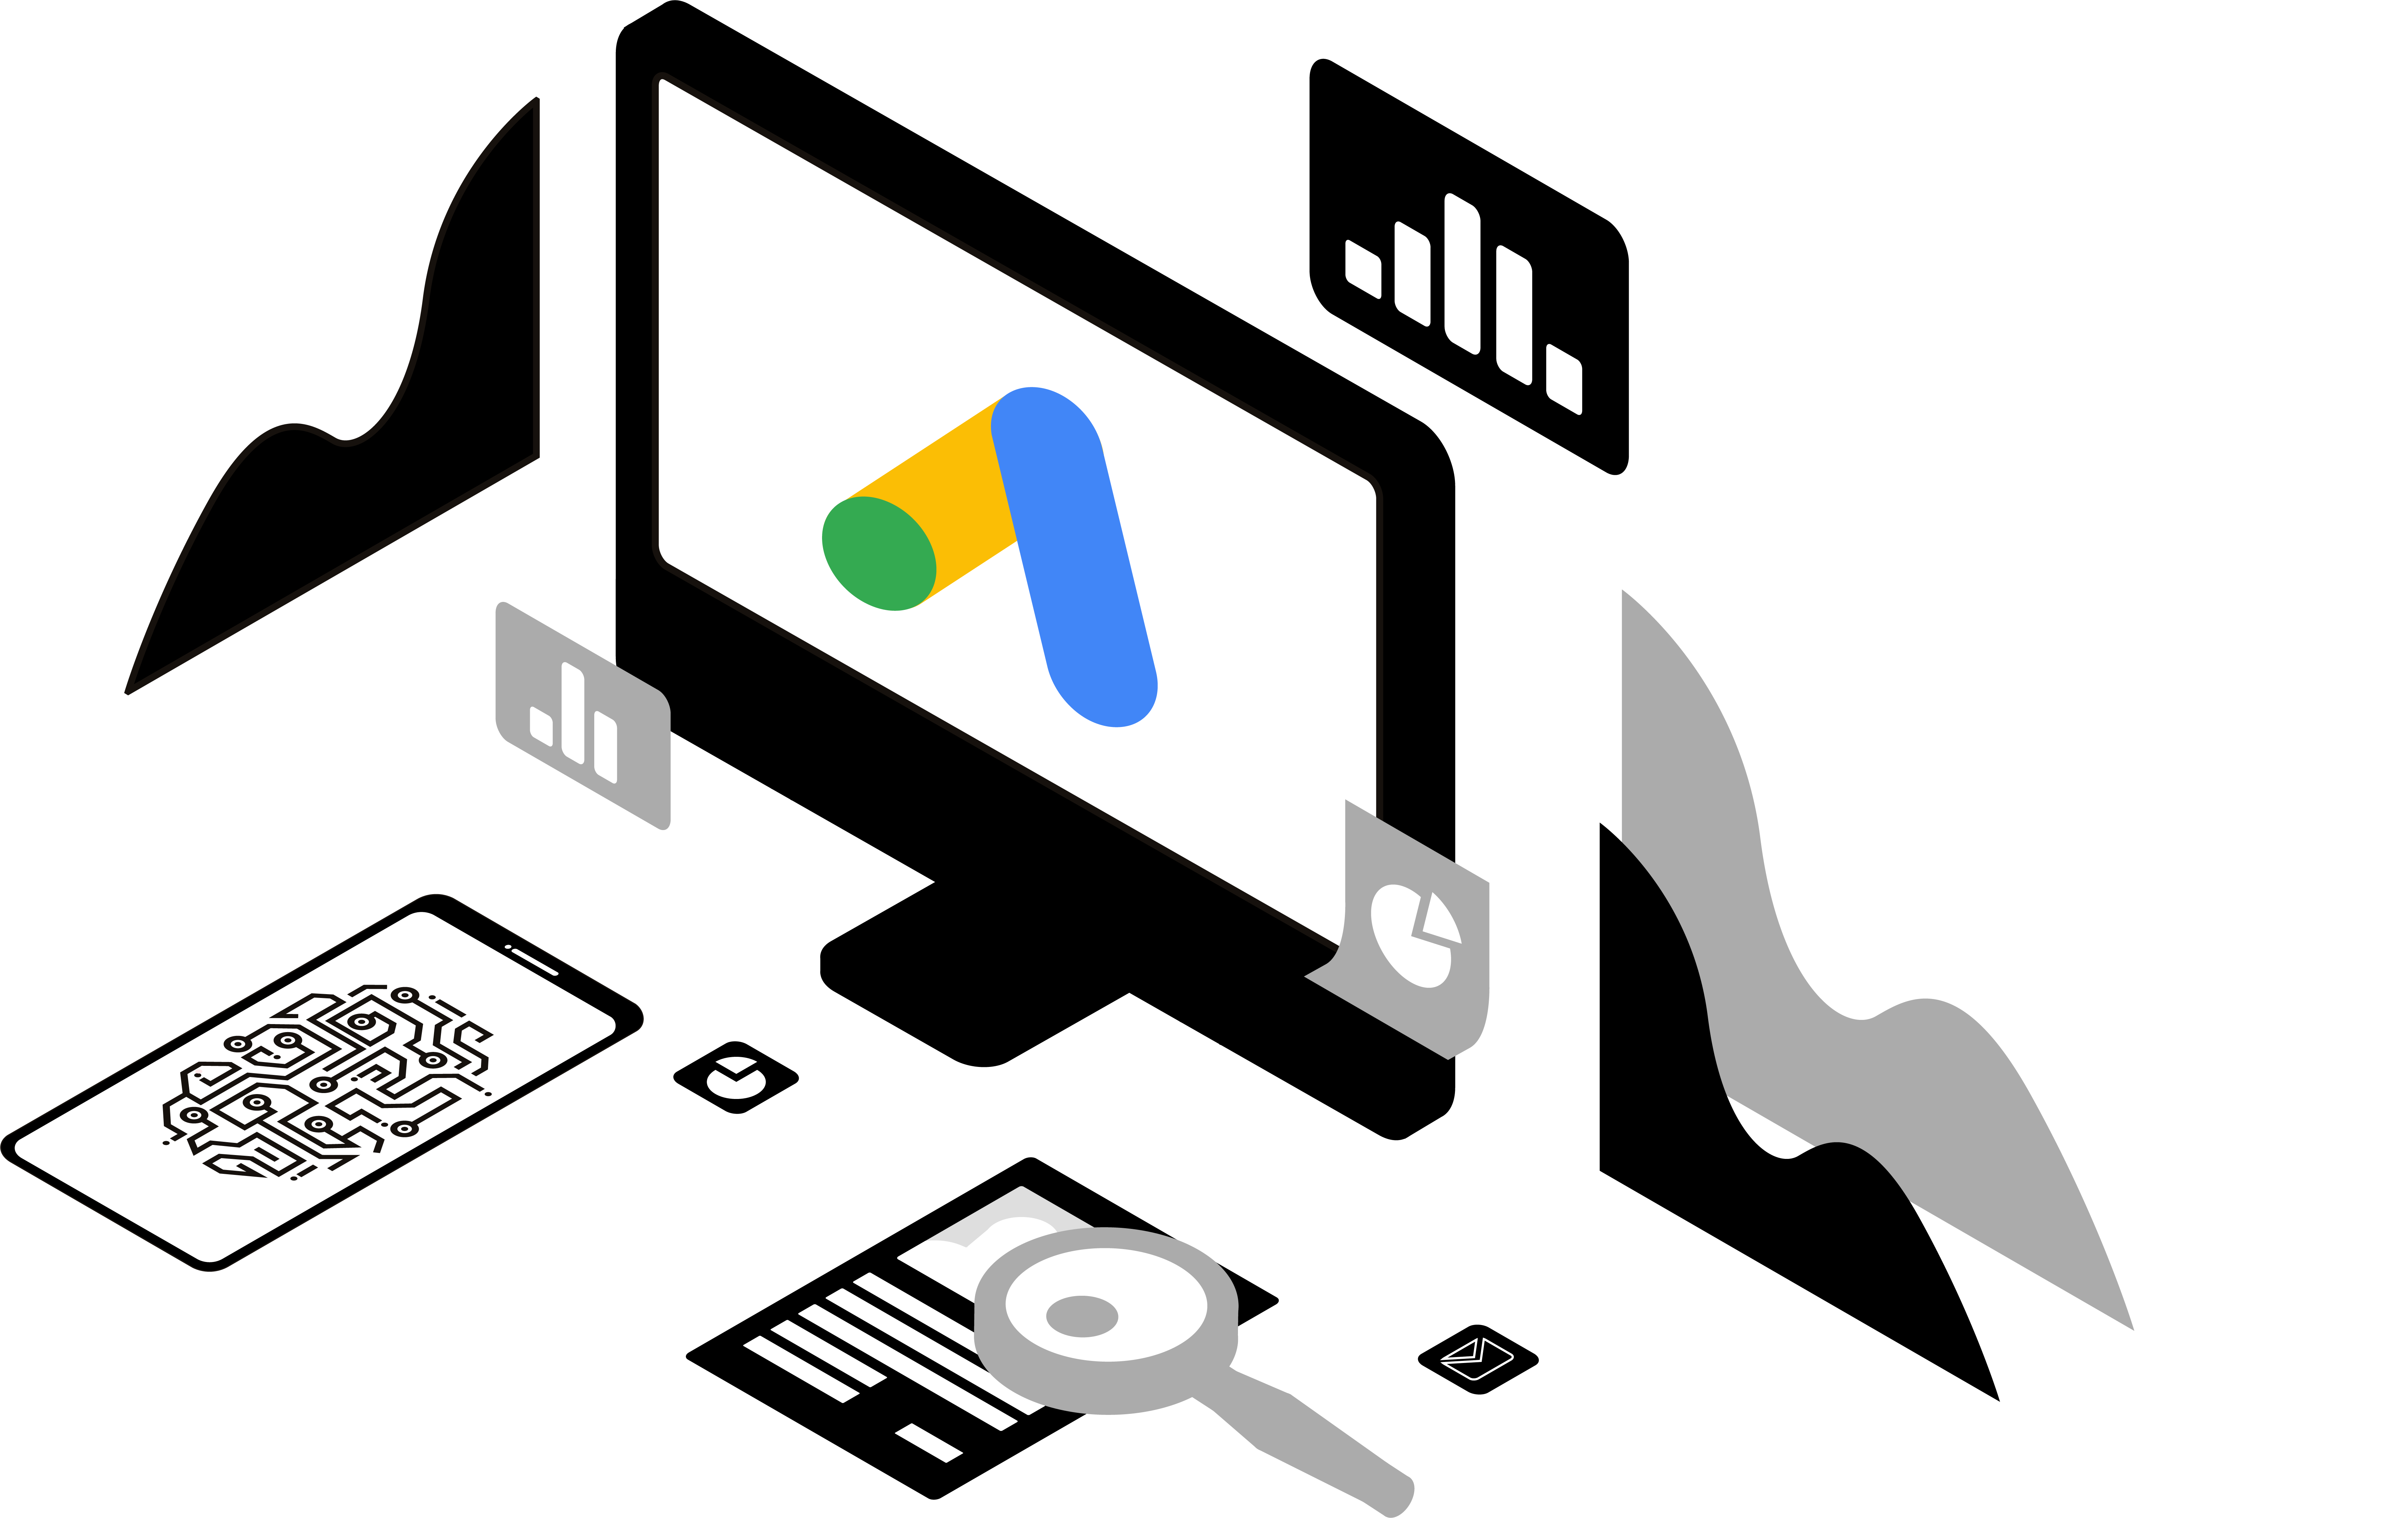 Google Ads Automatisierung PC mit Google Ads Logo. Daneben Statistiken, Checklisten, Smartphone, Lupe und andere Symbole.